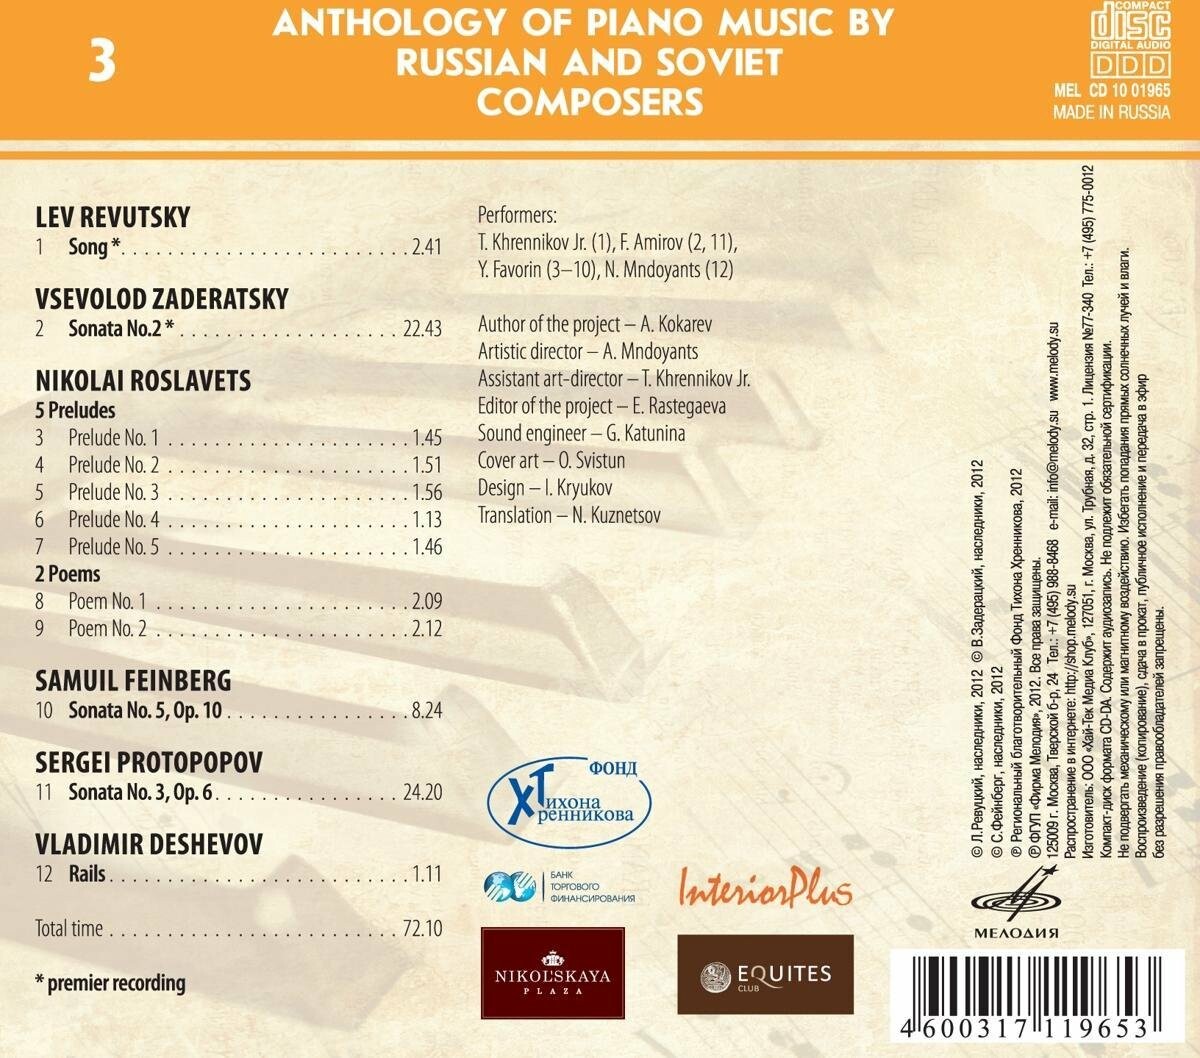 Антология фортепианной музыки русских и советских композиторов. Часть 1 (1917—1991) диск 3